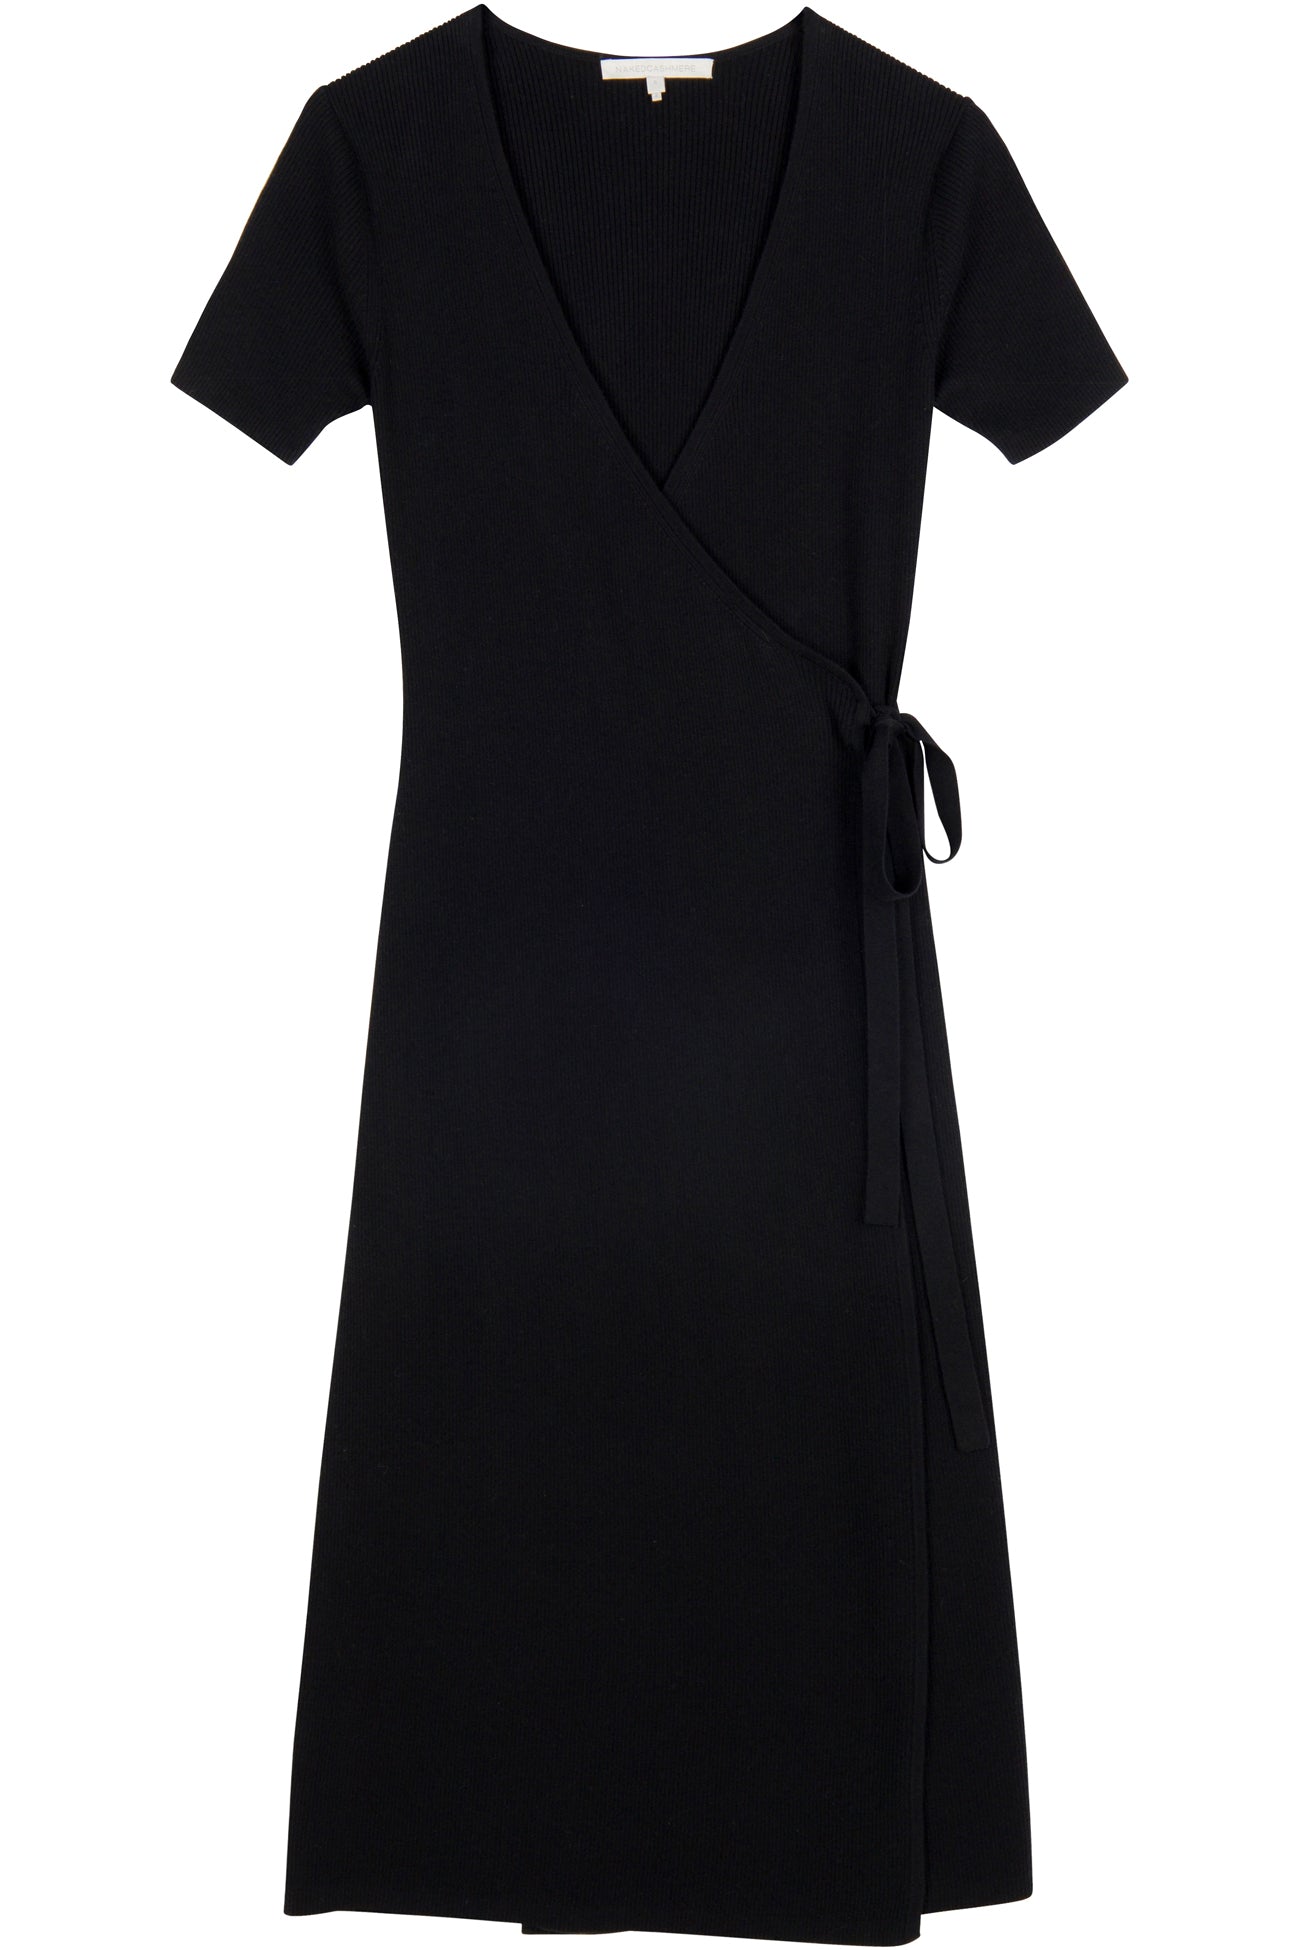 Women\'s Elsie Short Sleeve Dress | Midi NakedCashmere Wrap